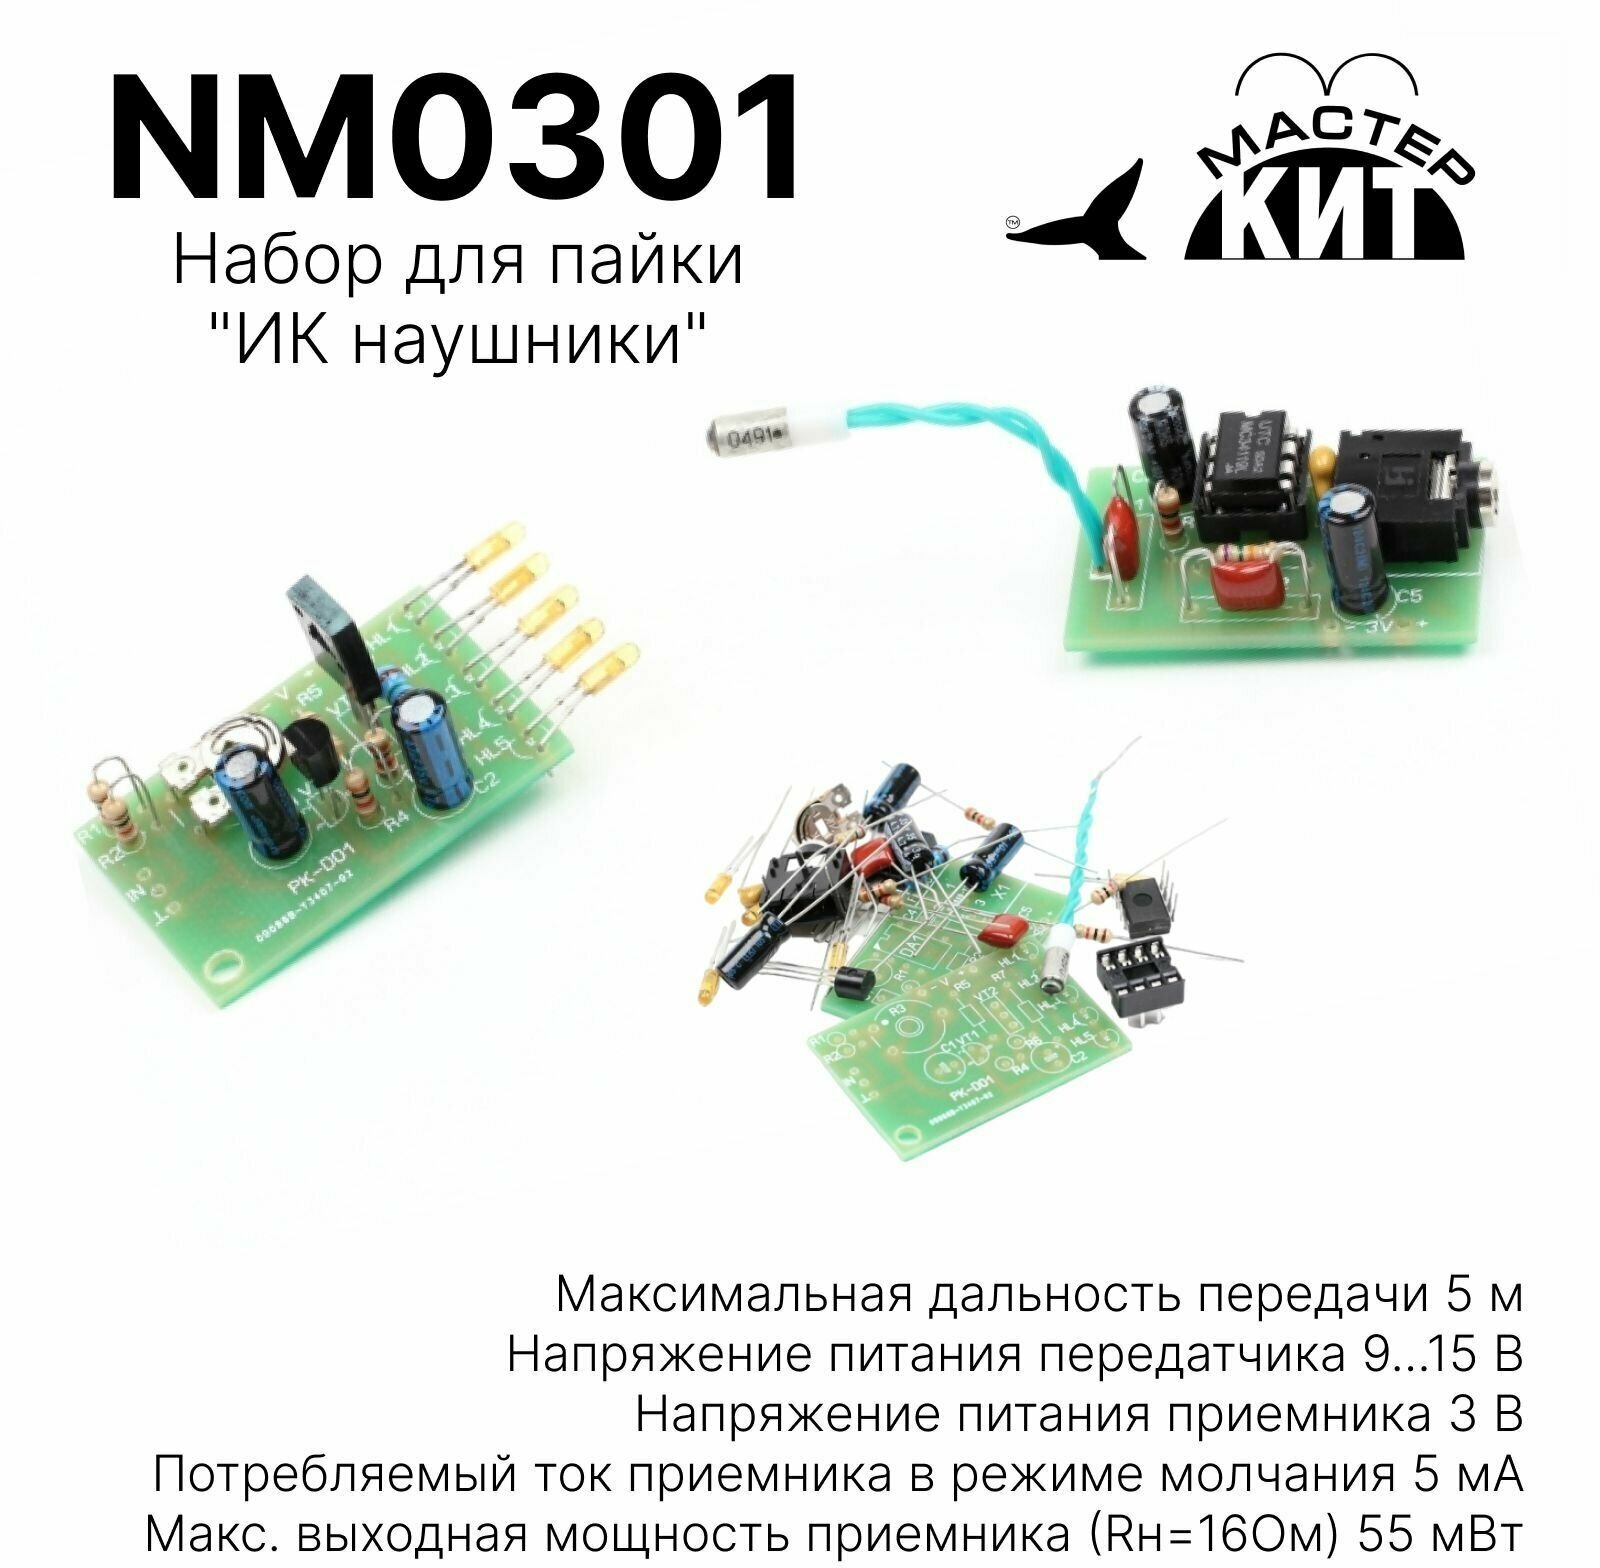 Набор для пайки - ИК наушники беспроводные NM0301 Мастер Кит